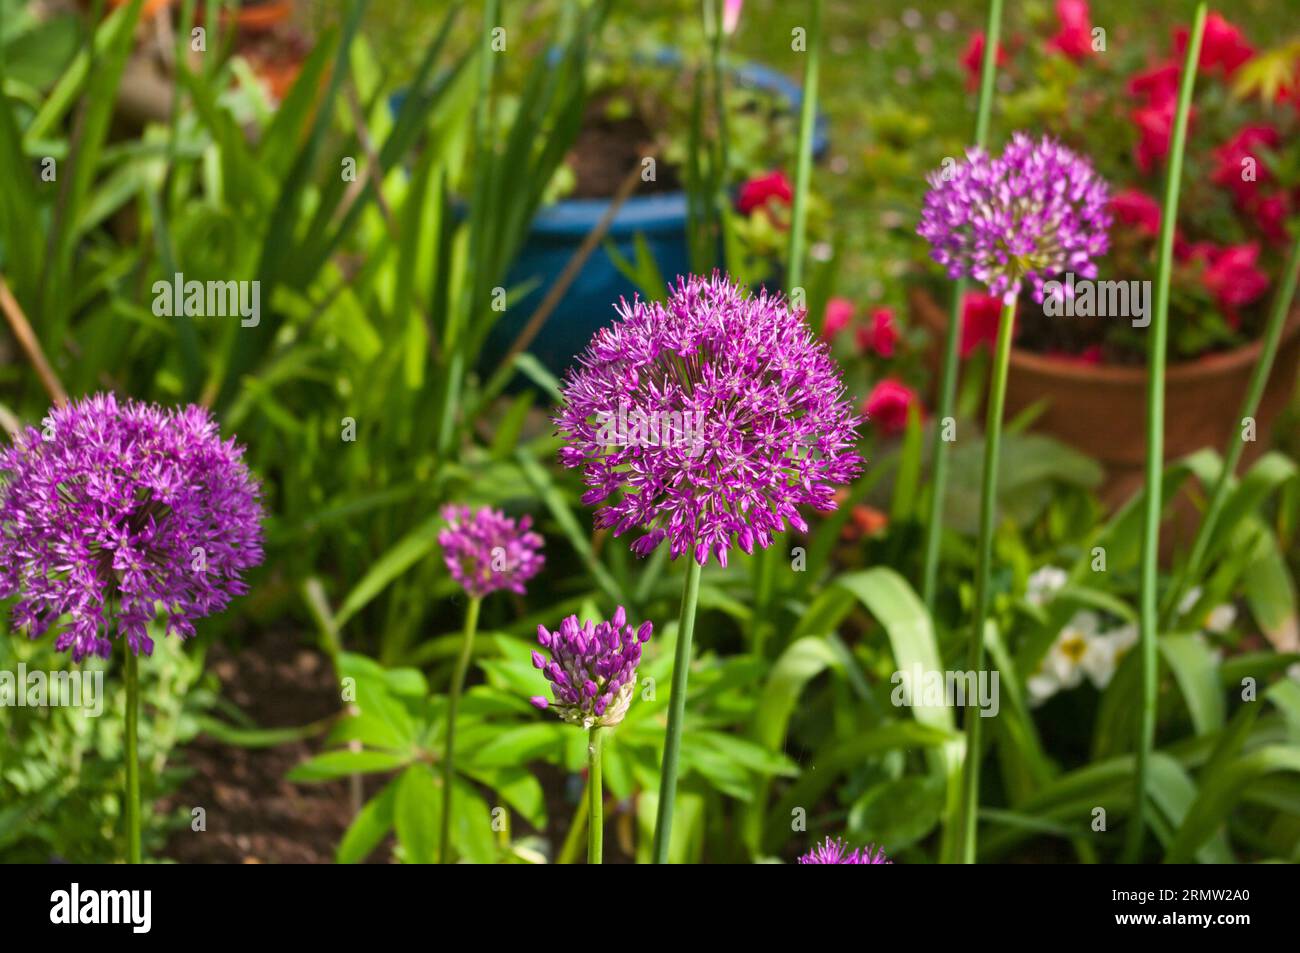 Allium hollandicum Purple Sensation Stock Photo